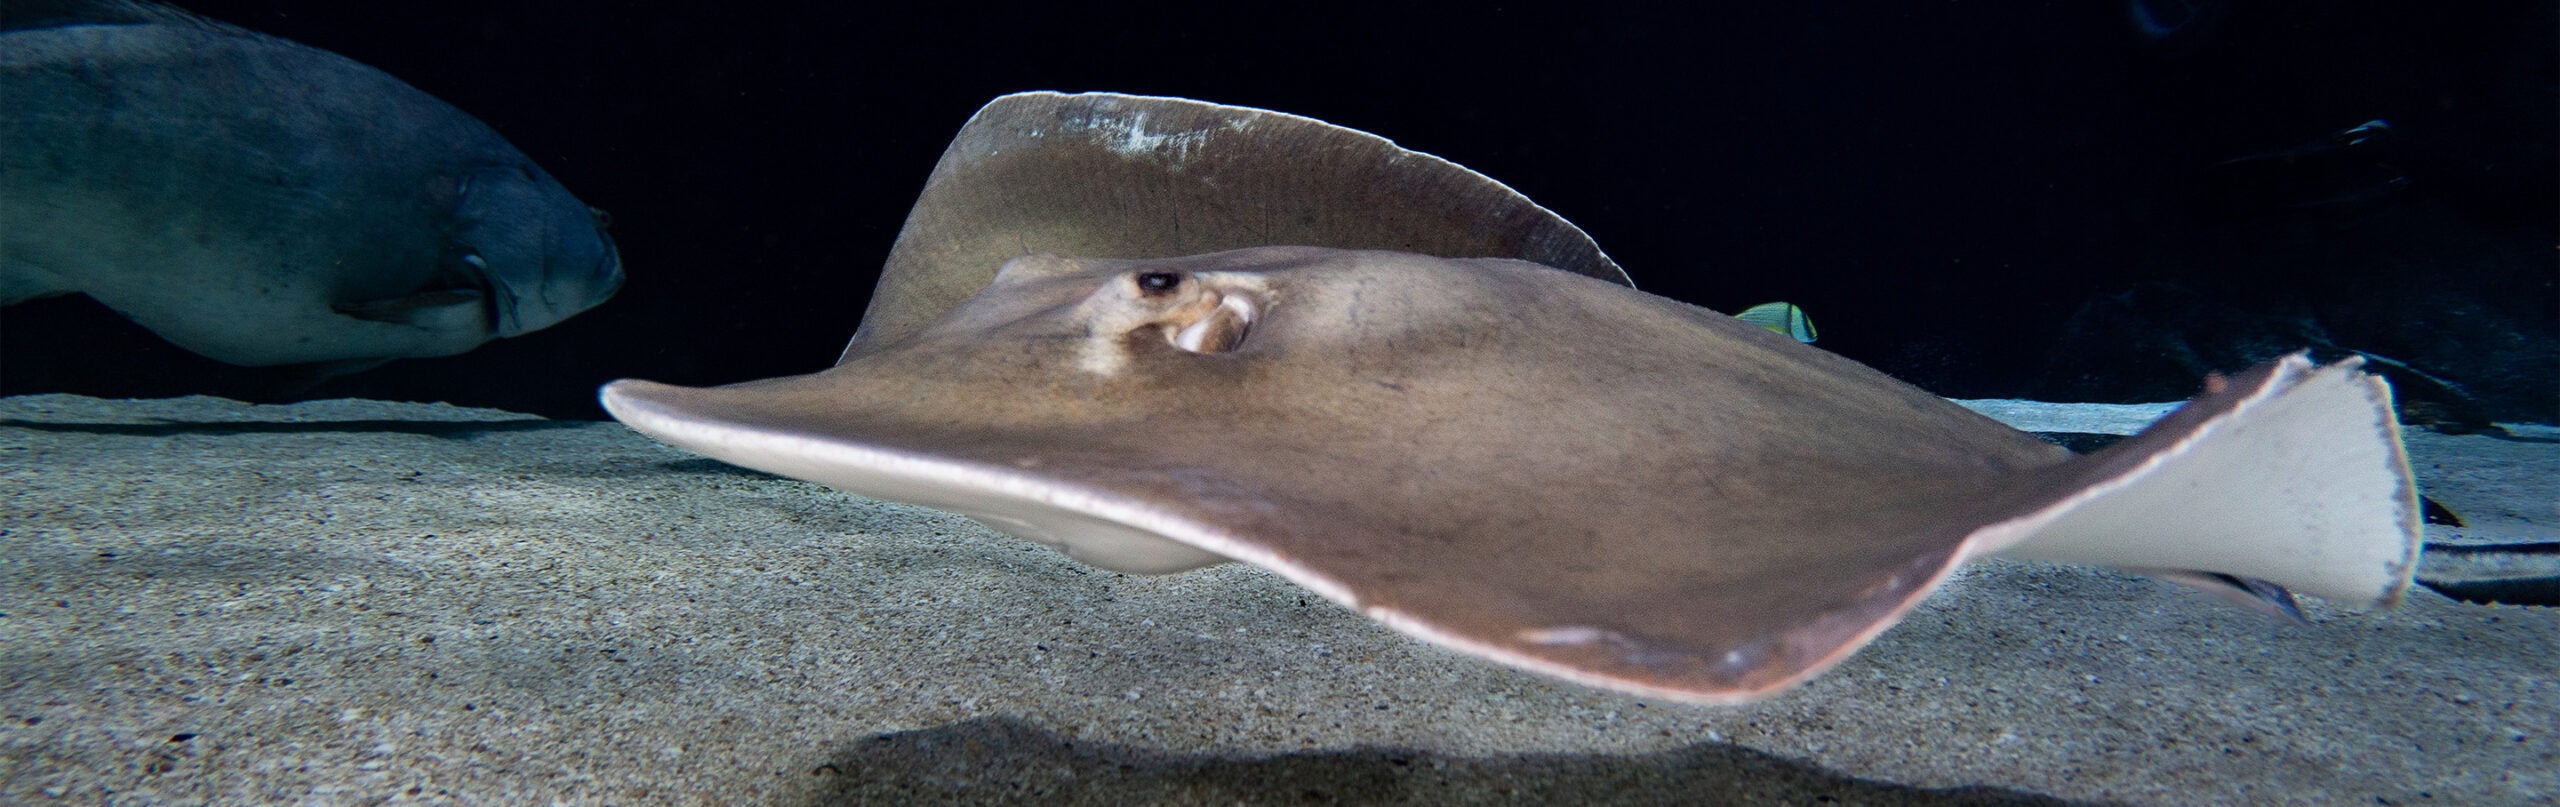 Pointed-Nose Stingray - Georgia Aquarium